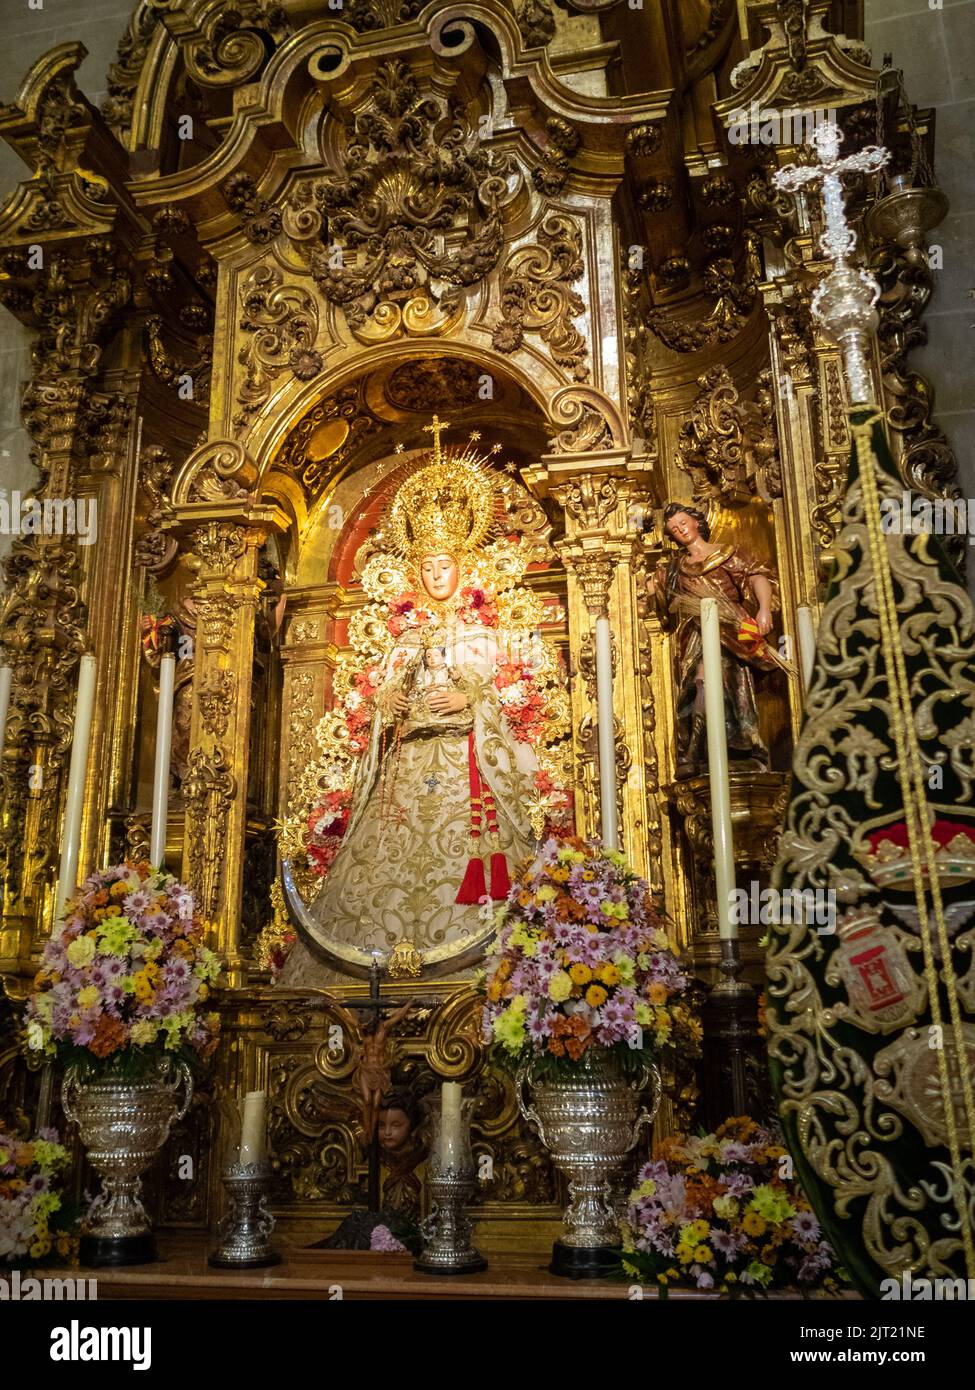 Virgen del Rocio alterpiece, Iglesia Colegial del Divino Salvador, Seville Stock Photo